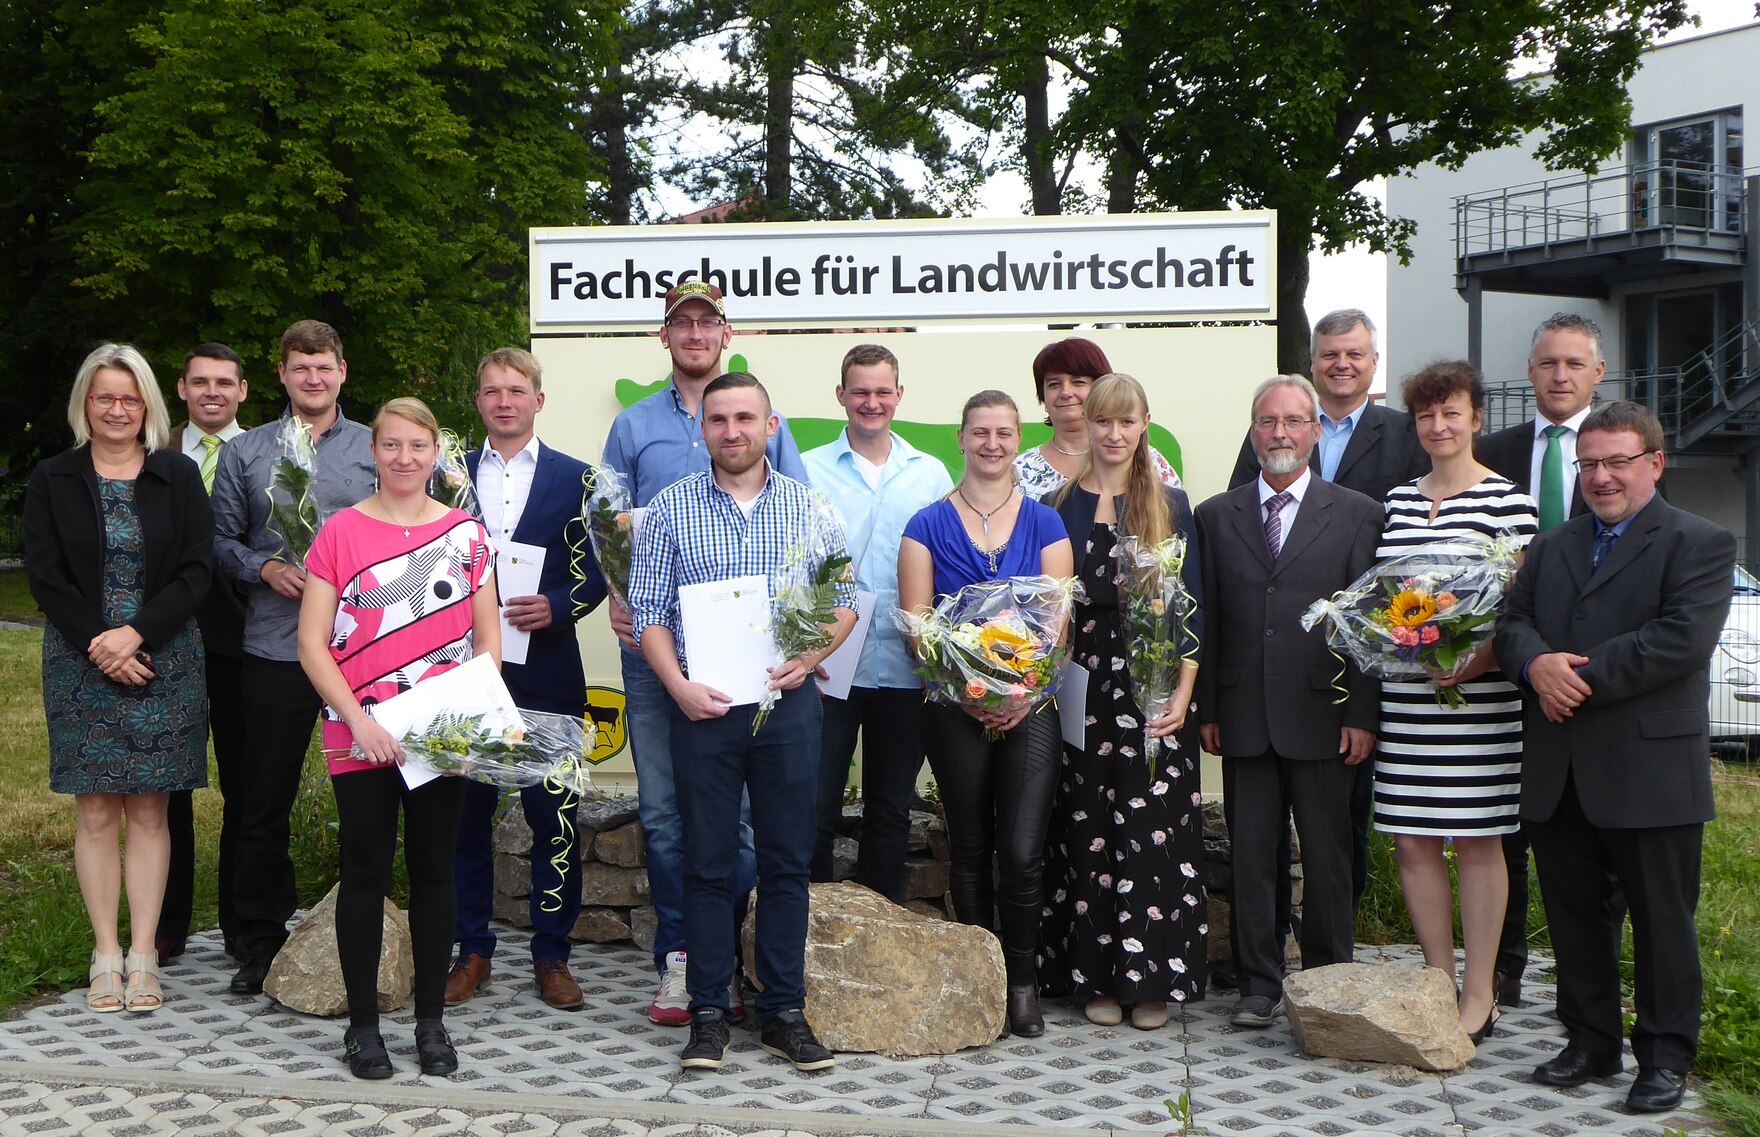 Die Abschlussklasse SgW 16, der Beigeordnete des Landrates von Zwickau Herr Michaelis (2 v.r.) und Lehrkräfte der Fachschule für Landwirtschaft Zwickau